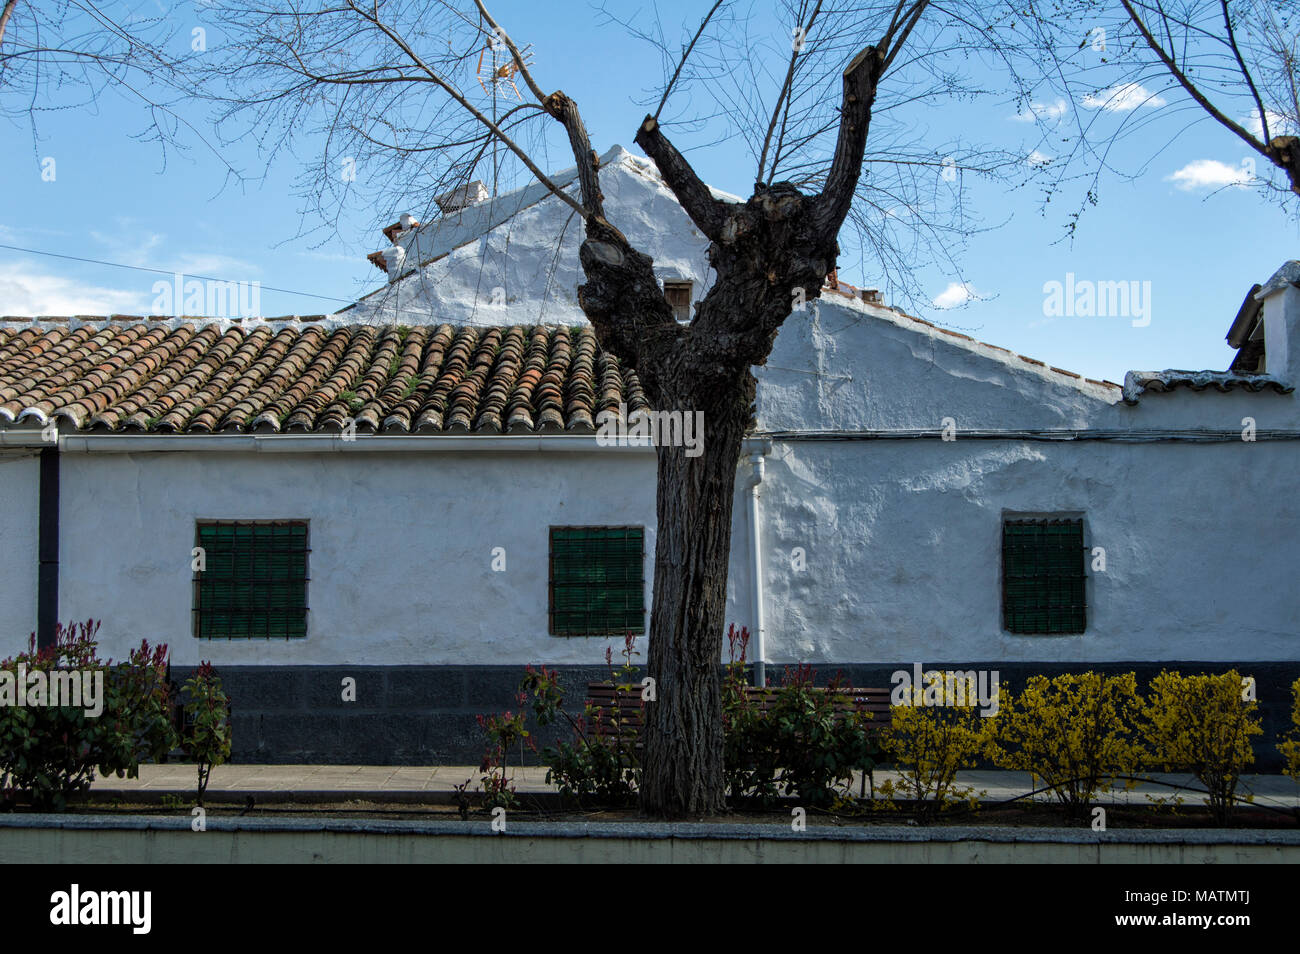 Maison de ville avec façade blanche arbre dans la ville de Polan, province de Tolède. Castilla la Mancha. L'Espagne. Banque D'Images